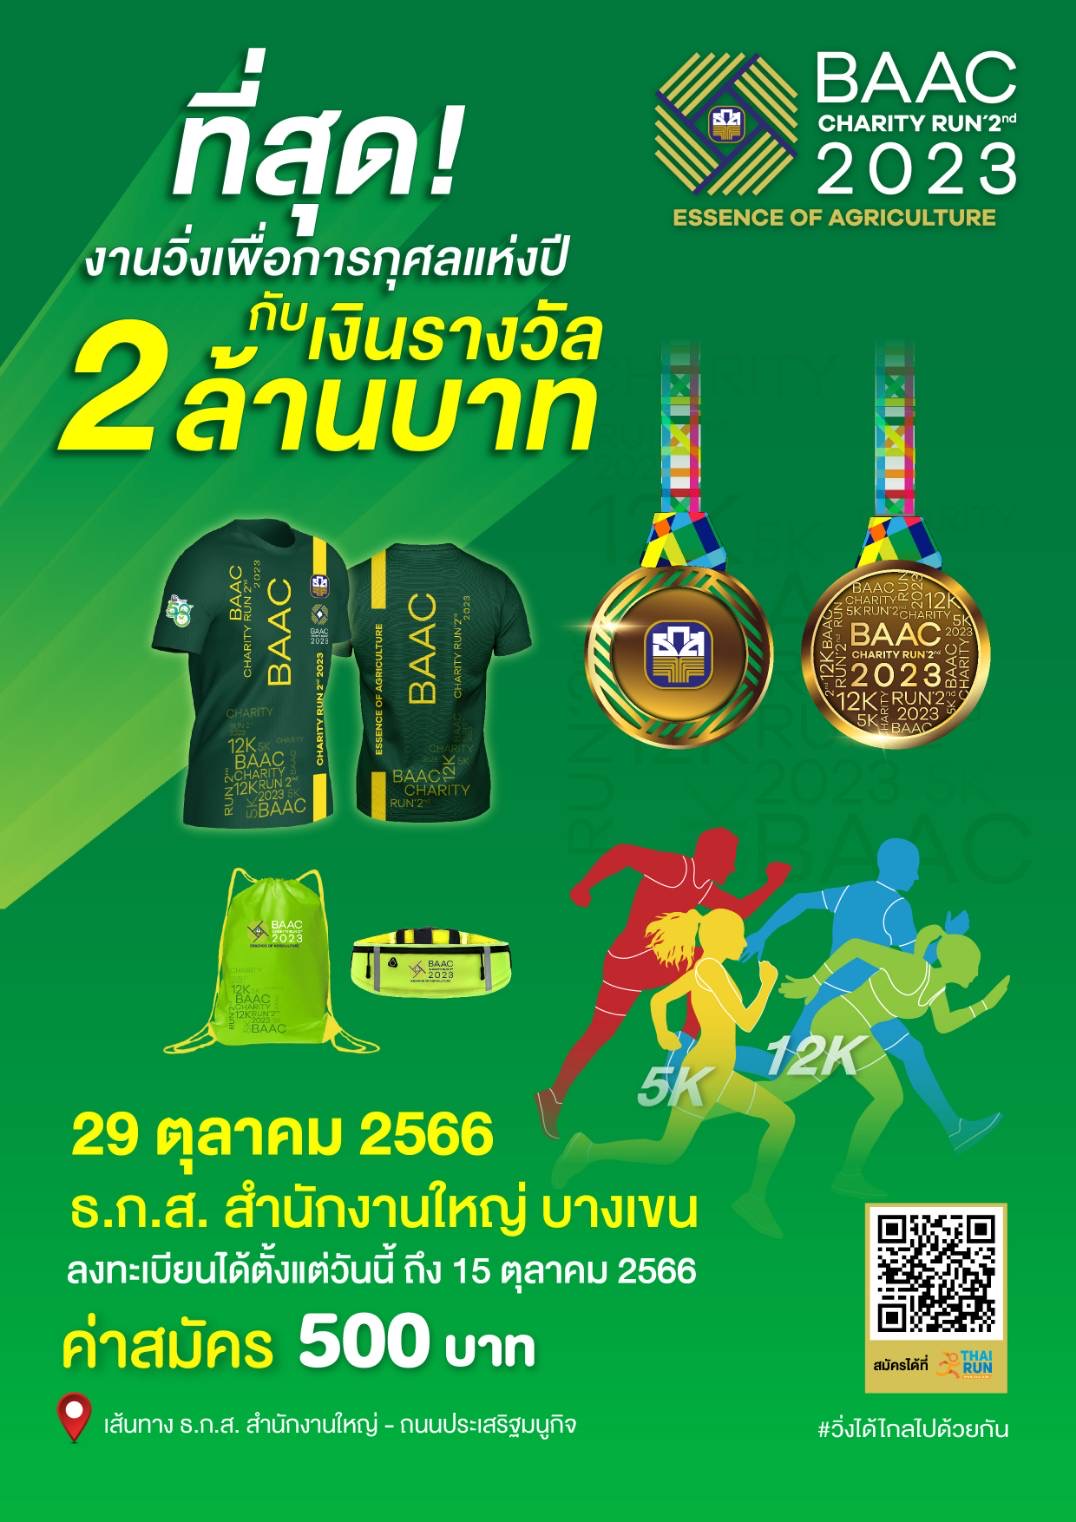 ธ.ก.ส. ชวนวิ่งเพื่อการกุศลในงาน BAAC Charity Run 2nd2023 พร้อมชิงรางวัลกว่า 2 ล้านบาท